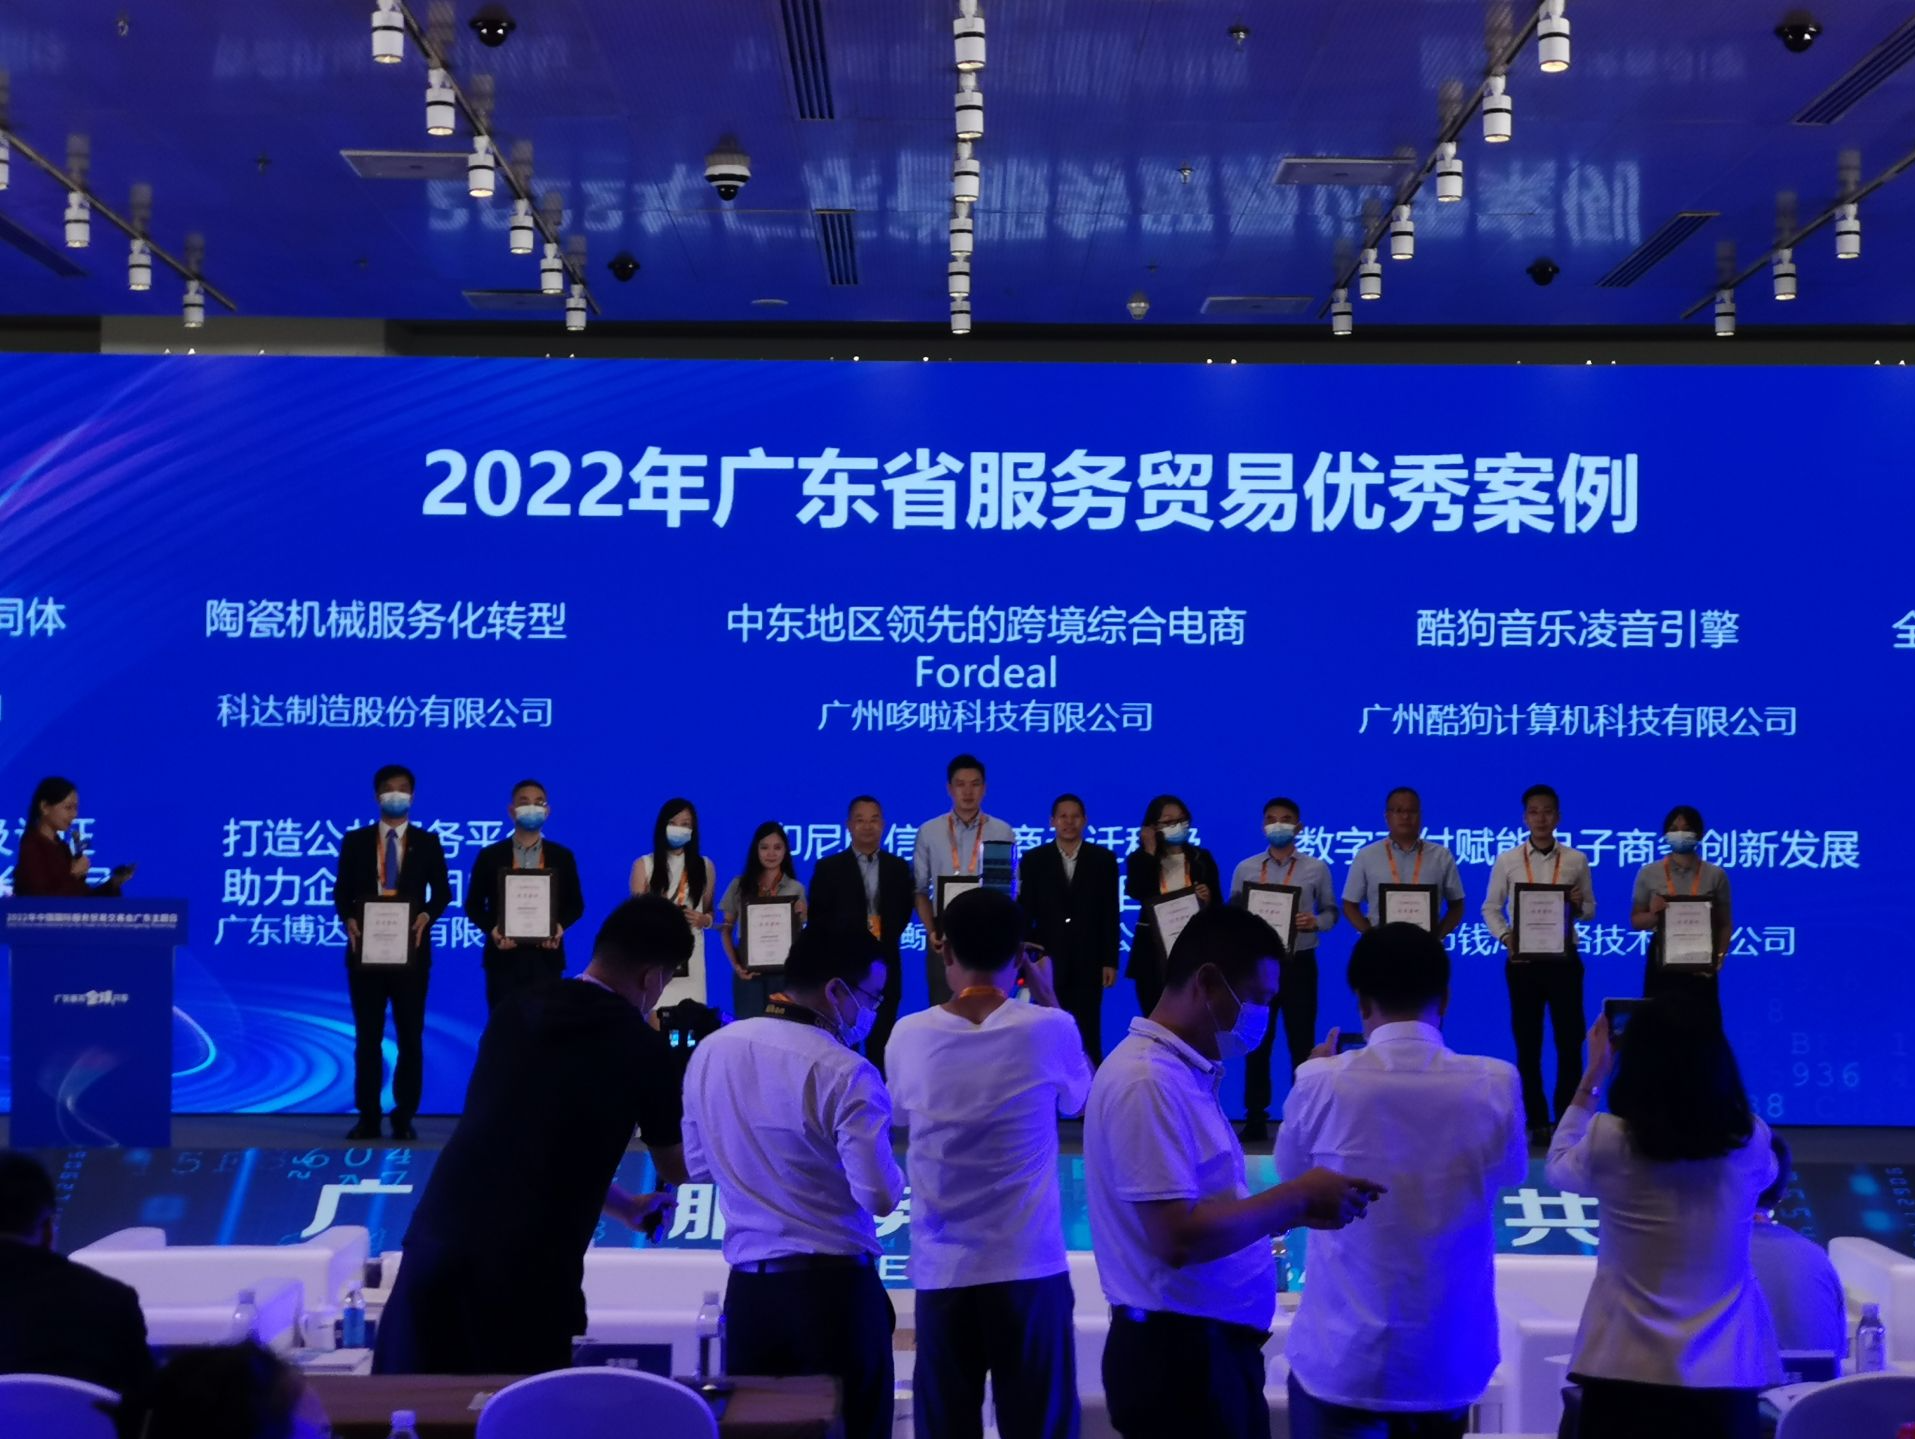 2022年服贸会“广东主题日”在京举办 广东首次作为主宾省亮相